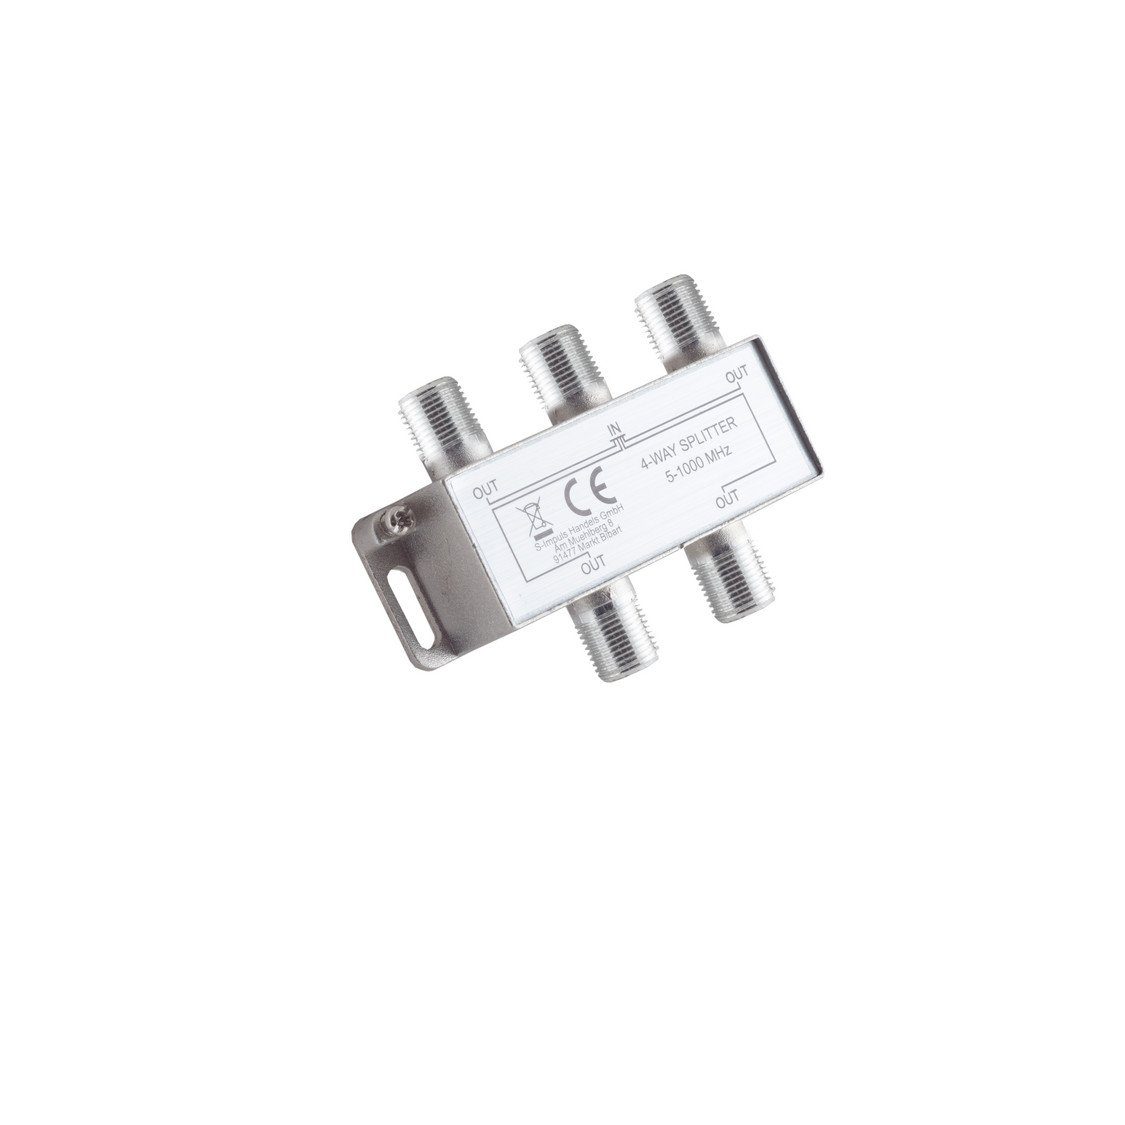 F-Serie; connectivity® Stammverteiler; maximum 5-1000 85 MHz, S/CONN Koax-Kabelverbinder 4-fach; dB